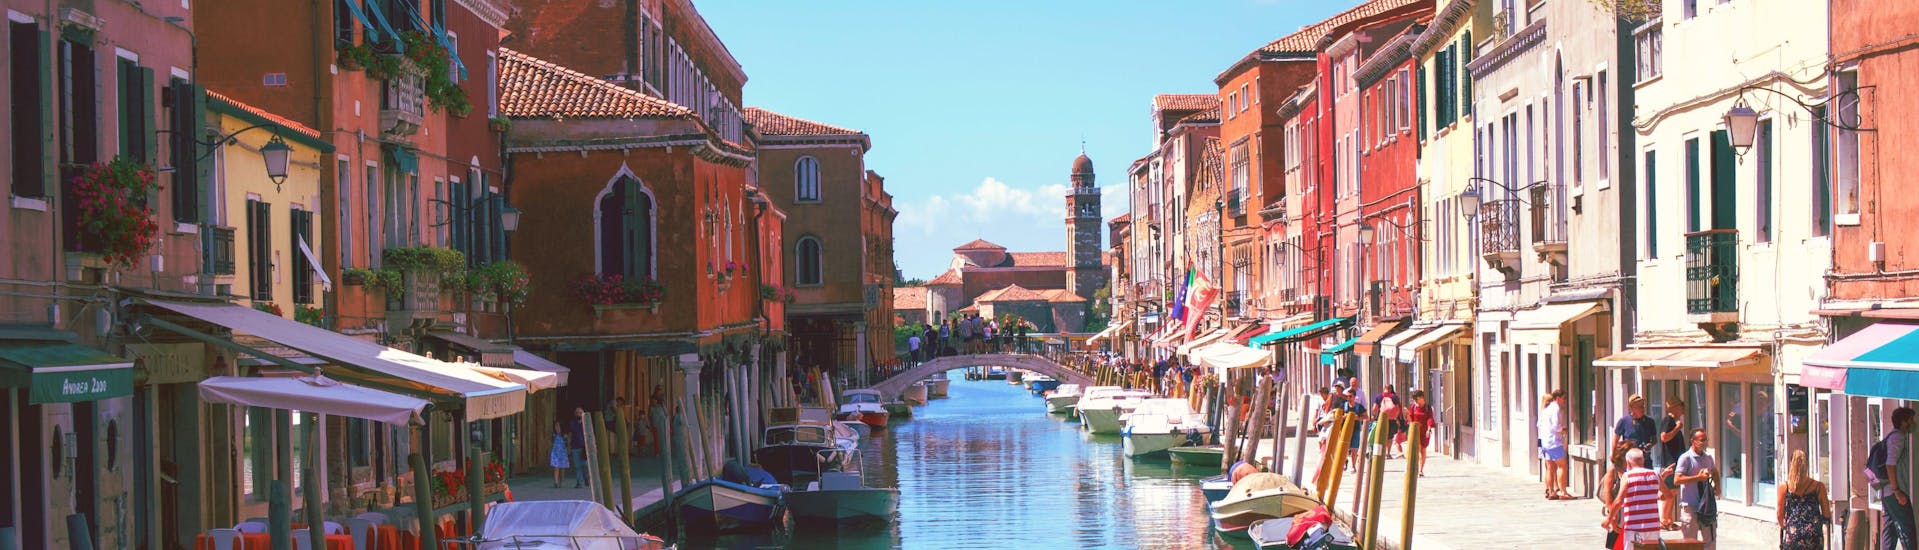 Vista di Burano, un'isola vicino a Venezia che potrete raggiungere con un giro in barca.